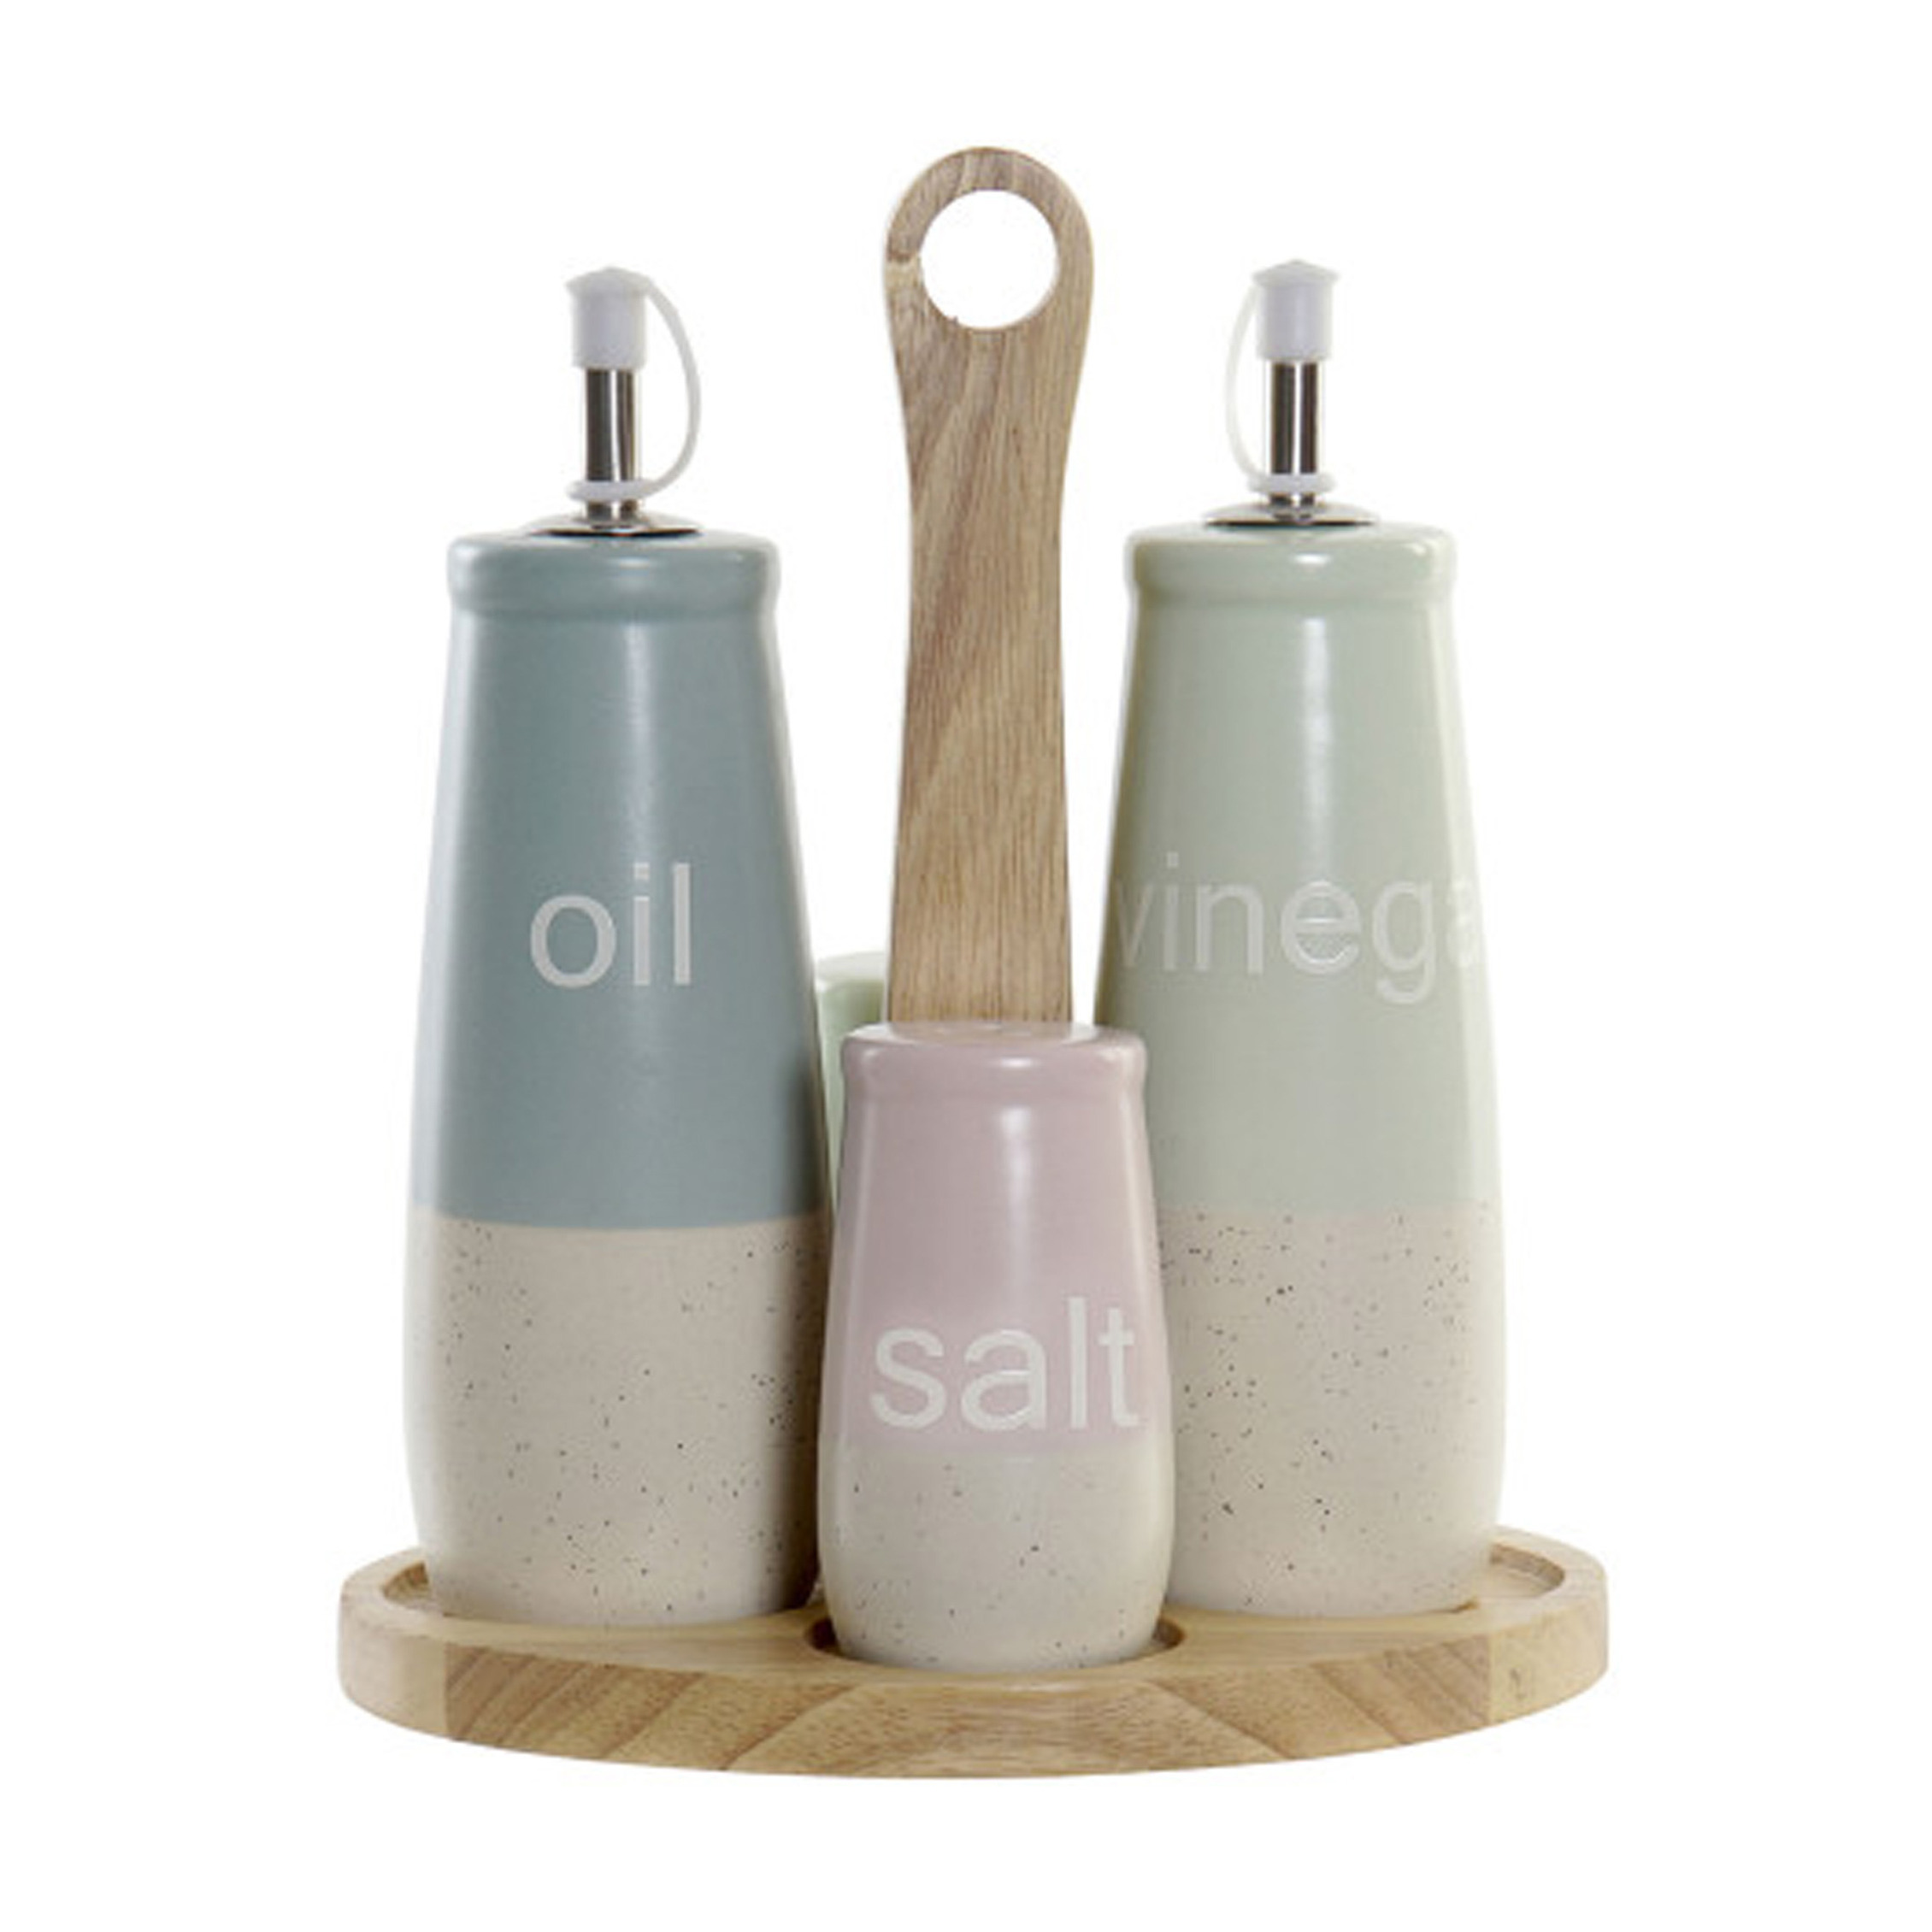 Items Azijn-Olie flessen tafelset met peper-zout vaatjes keramiek-bamboe kleurenmix